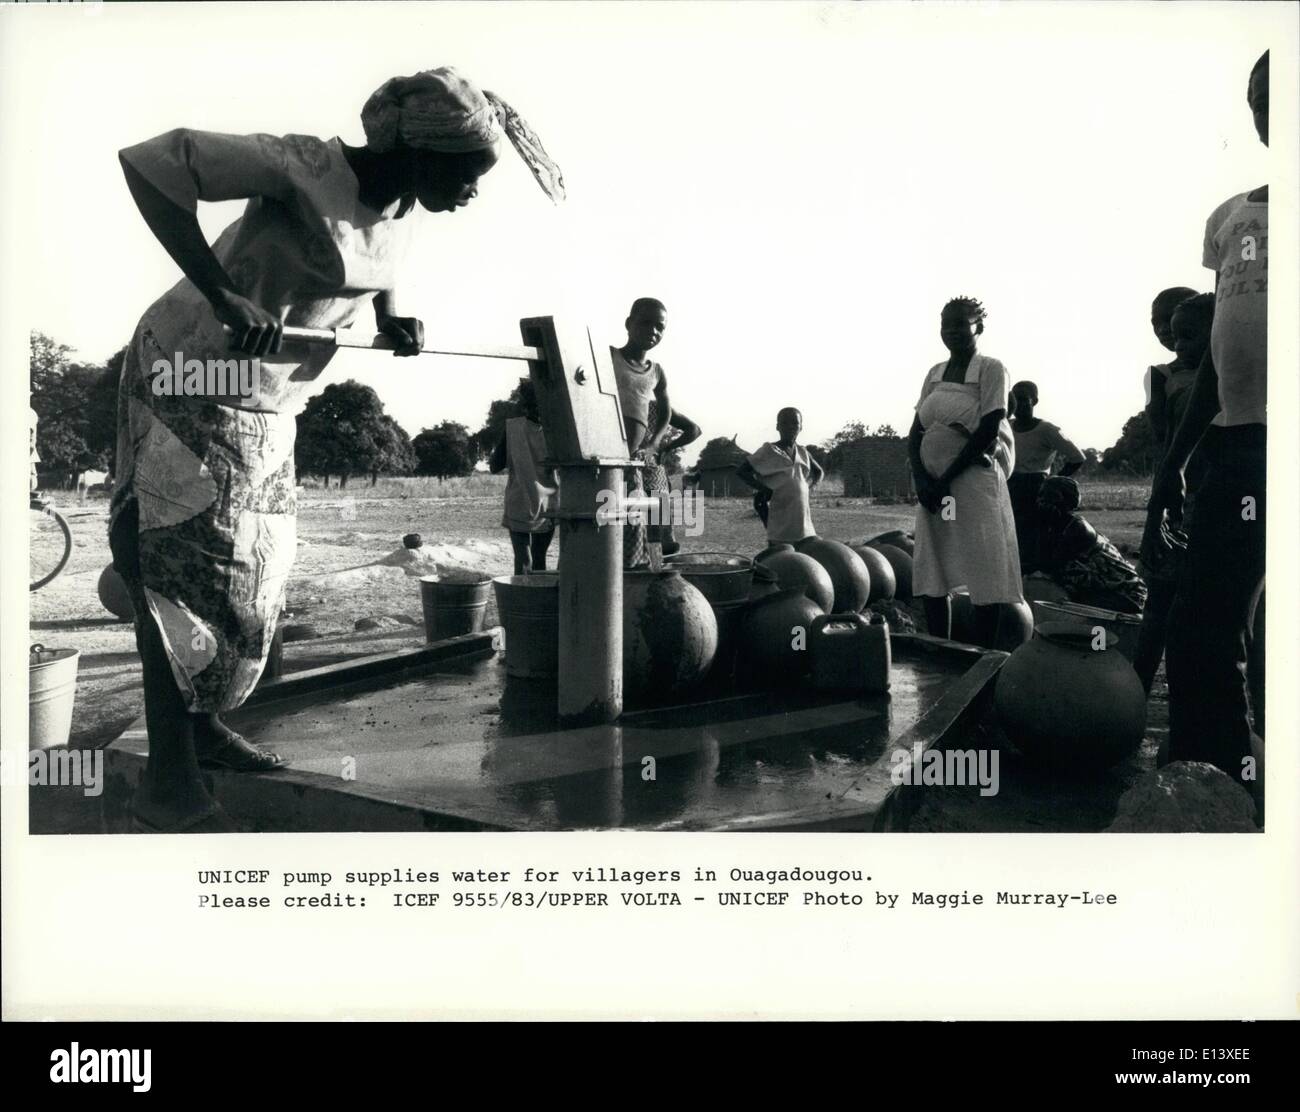 27 mars 2012 - L'UNICEF fournit de l'eau de la pompe pour les villageois à Ouagadougou. Banque D'Images